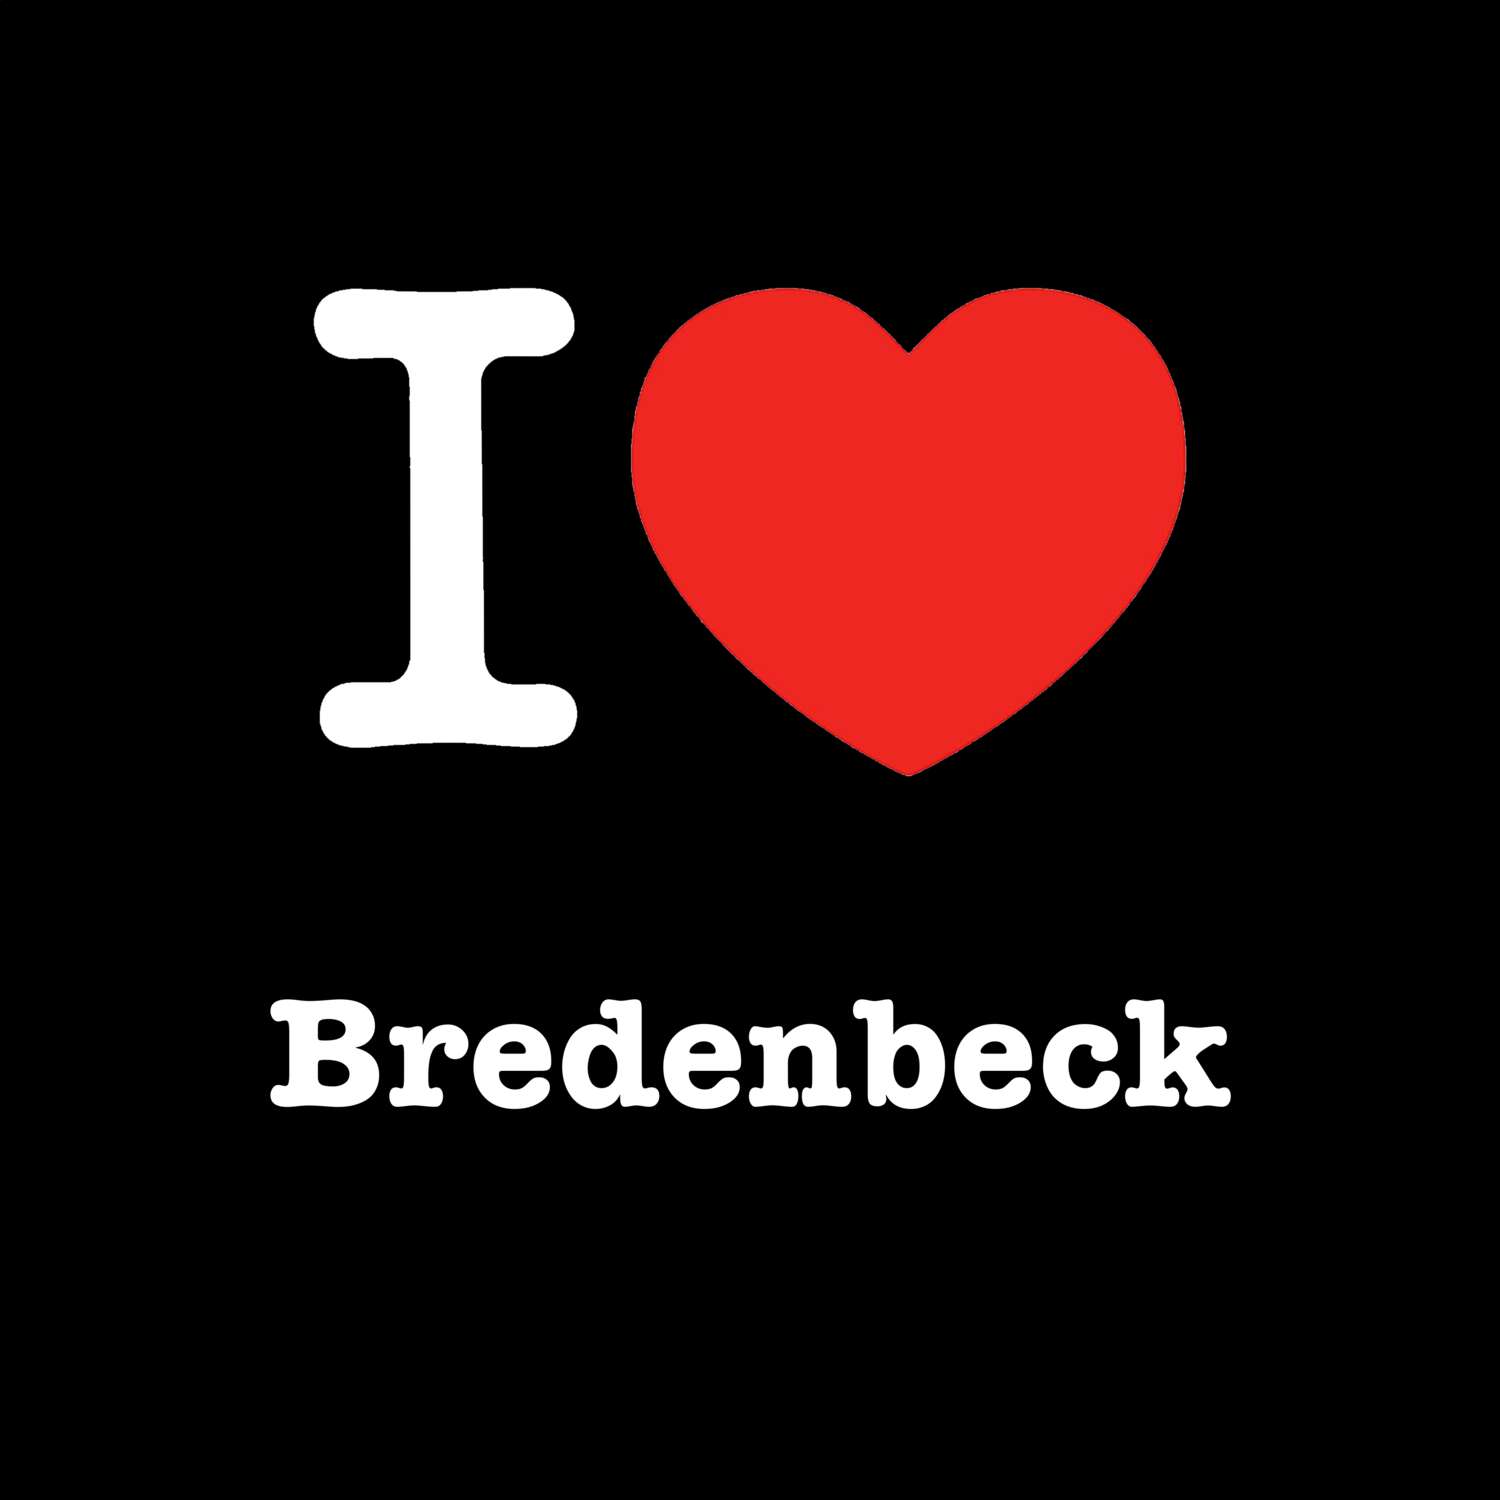 Bredenbeck T-Shirt »I love«